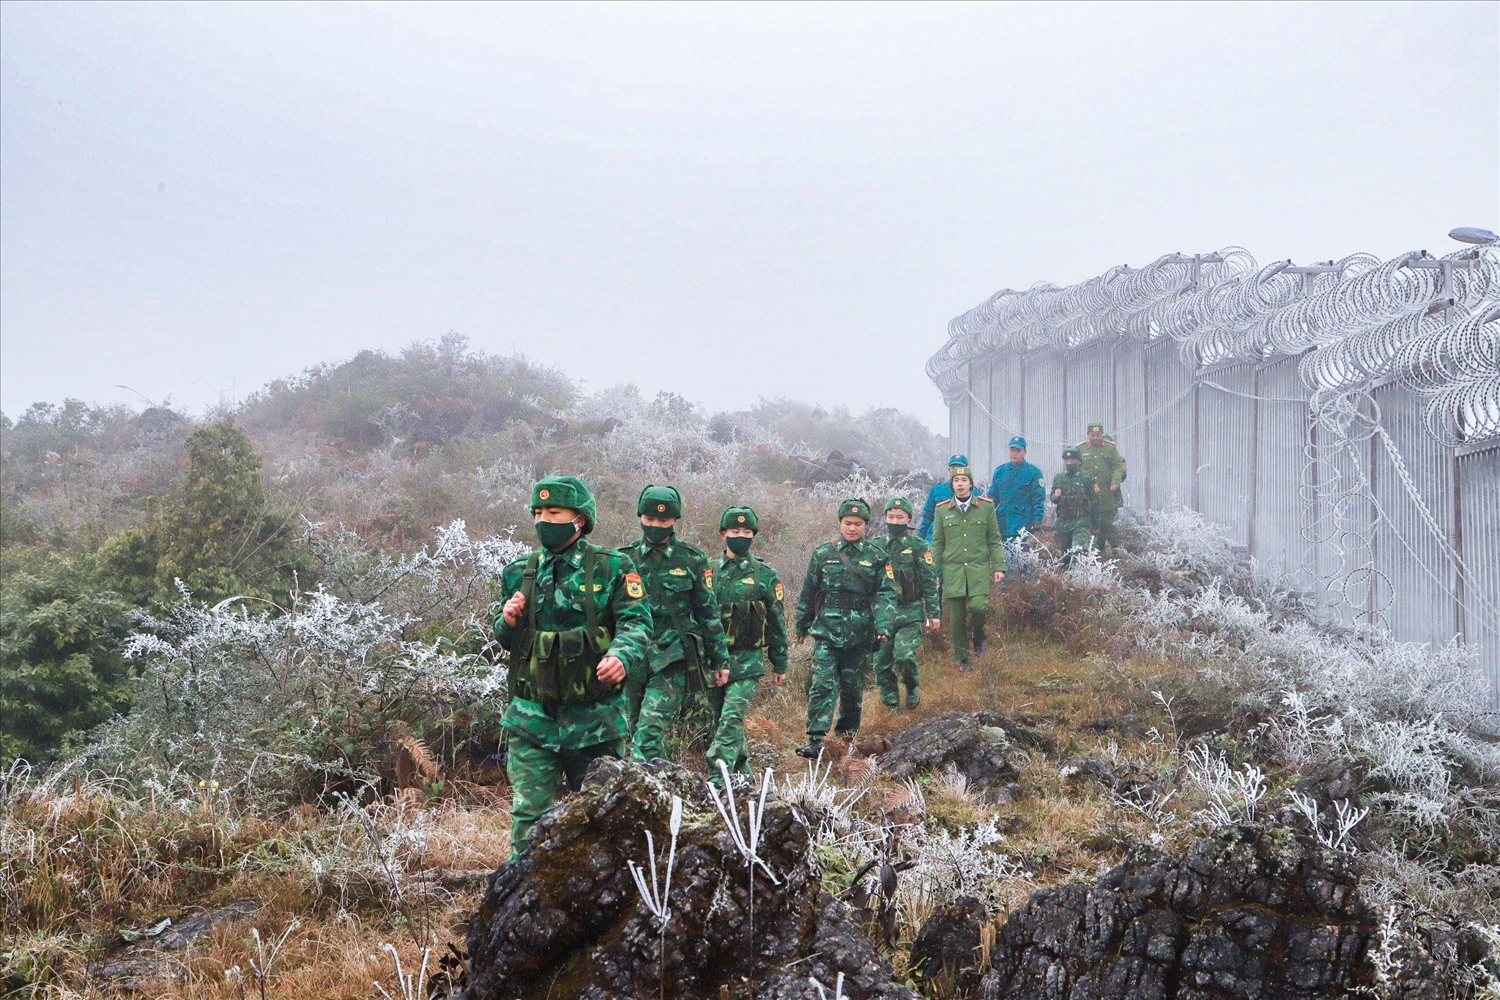 Băng tuyết và sương mù khiến công tác tuần tra, kiểm soát biên giới, của cán bộ, chiến sĩ Đồn Biên phòng Xón Cái và các lực lượng phối hợp vất vả hơn.